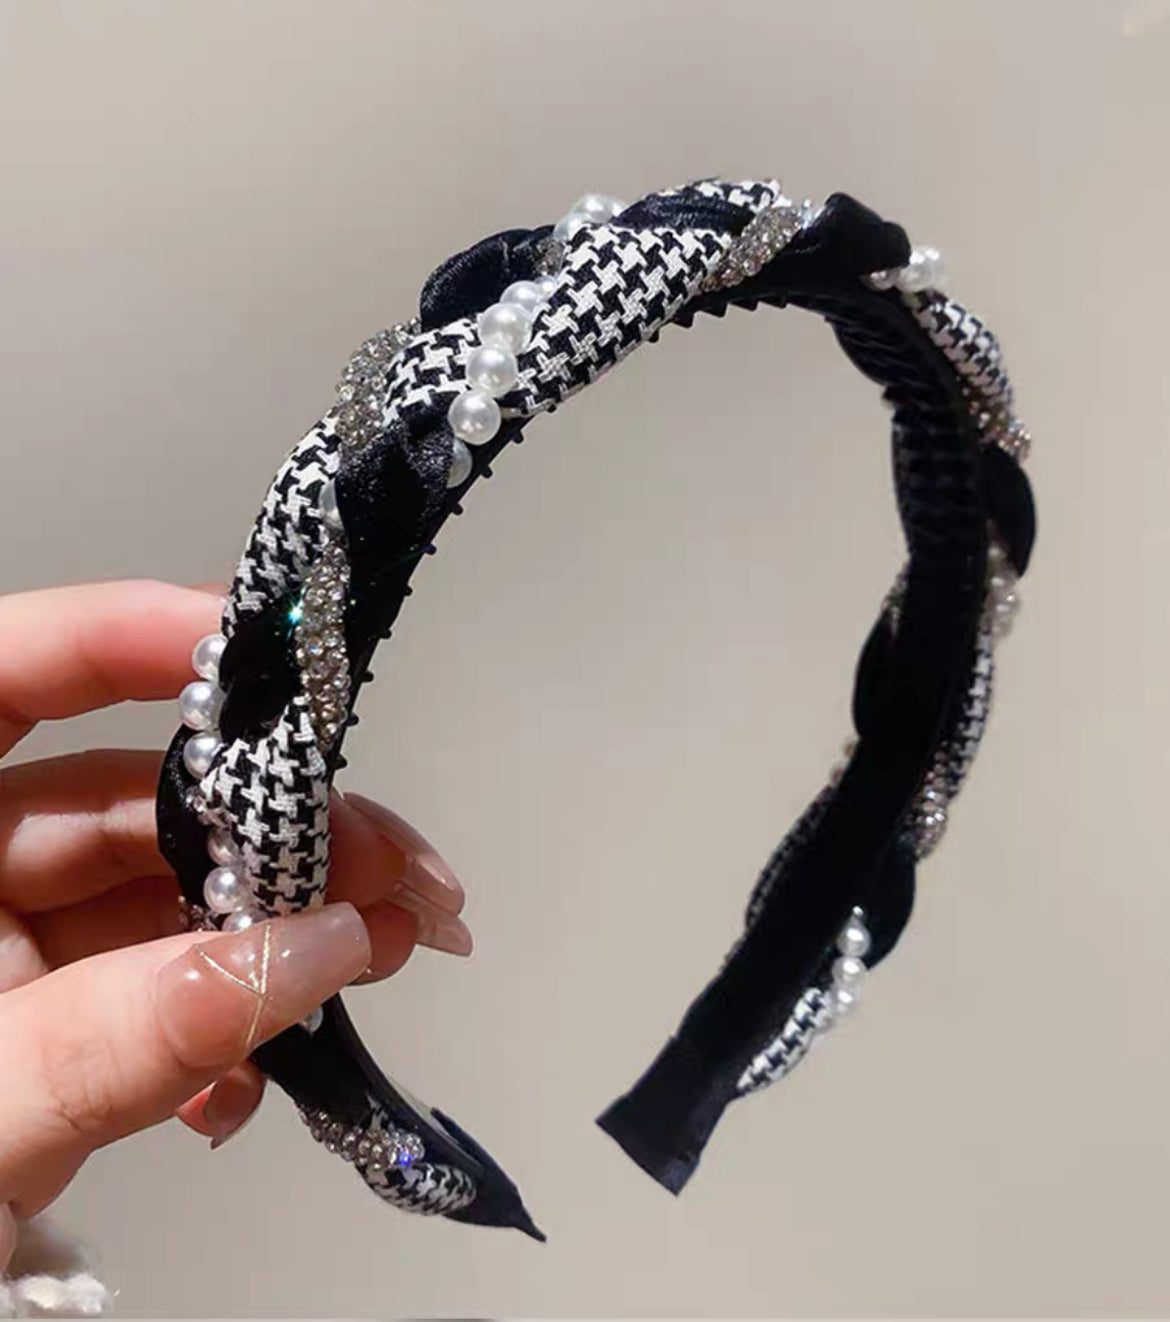 韓式人工髮箍- 併布珍珠花紋髮箍